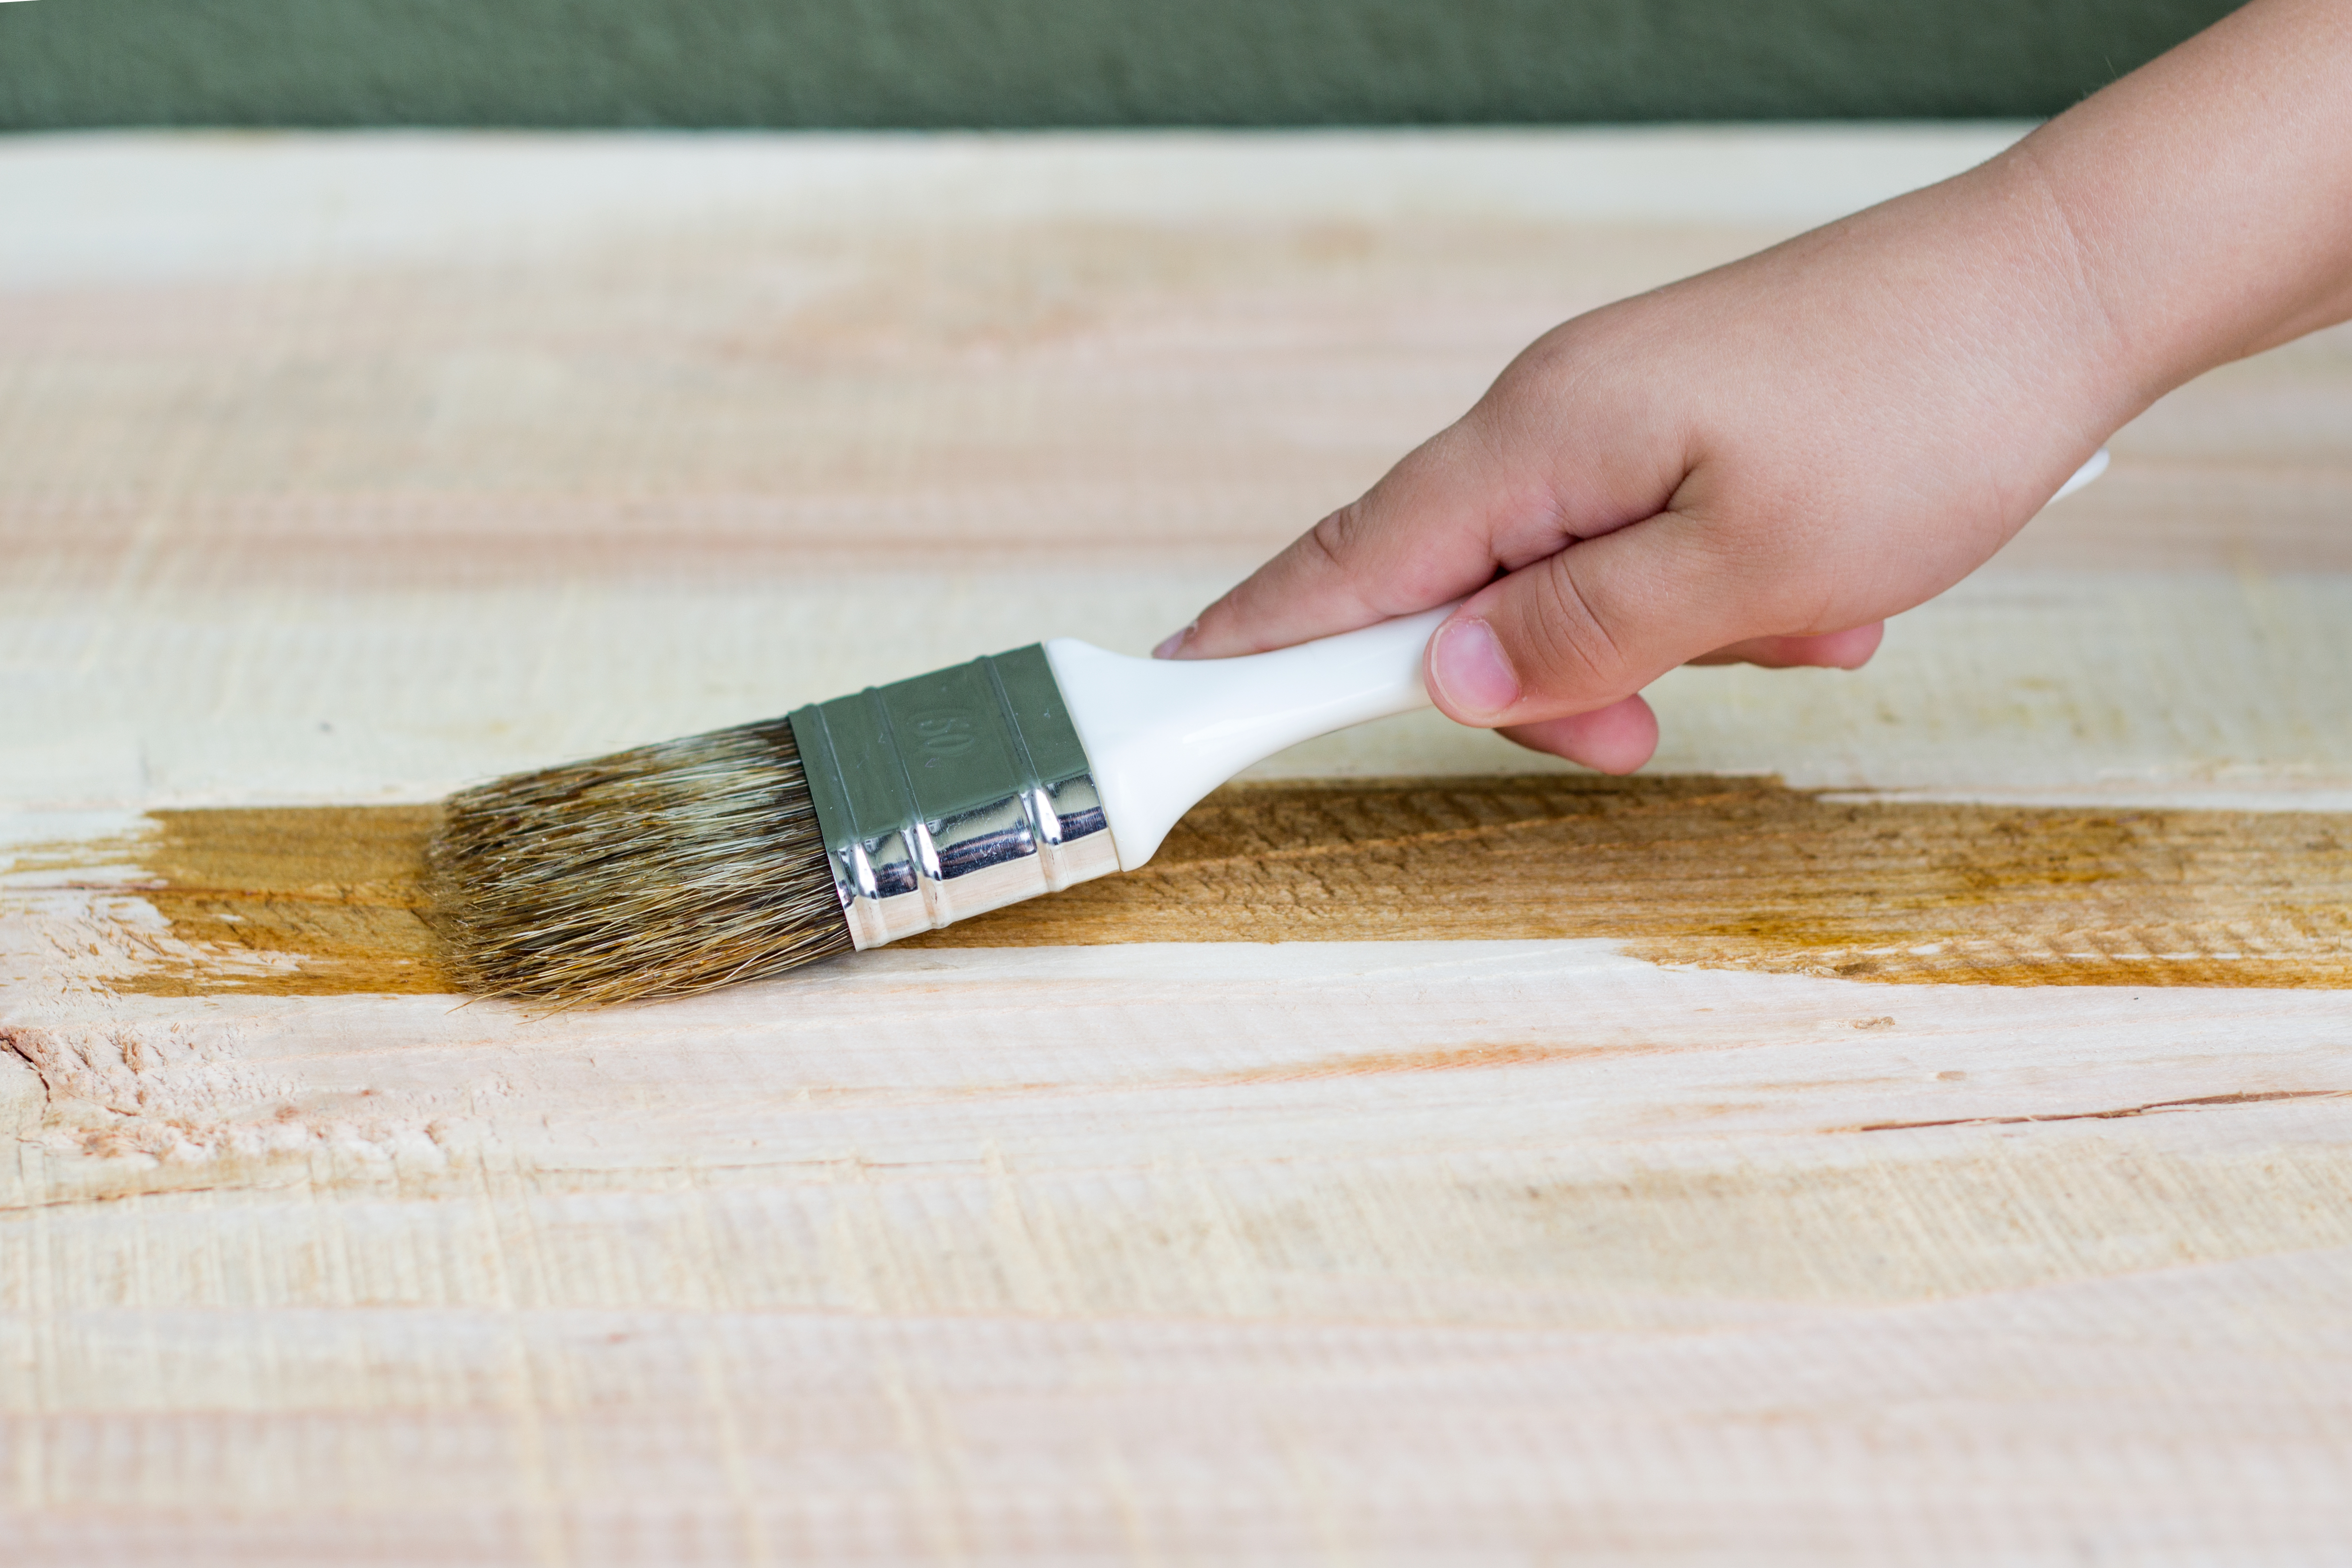 Cómo hacer barniz casero para madera paso a paso y fácilmente